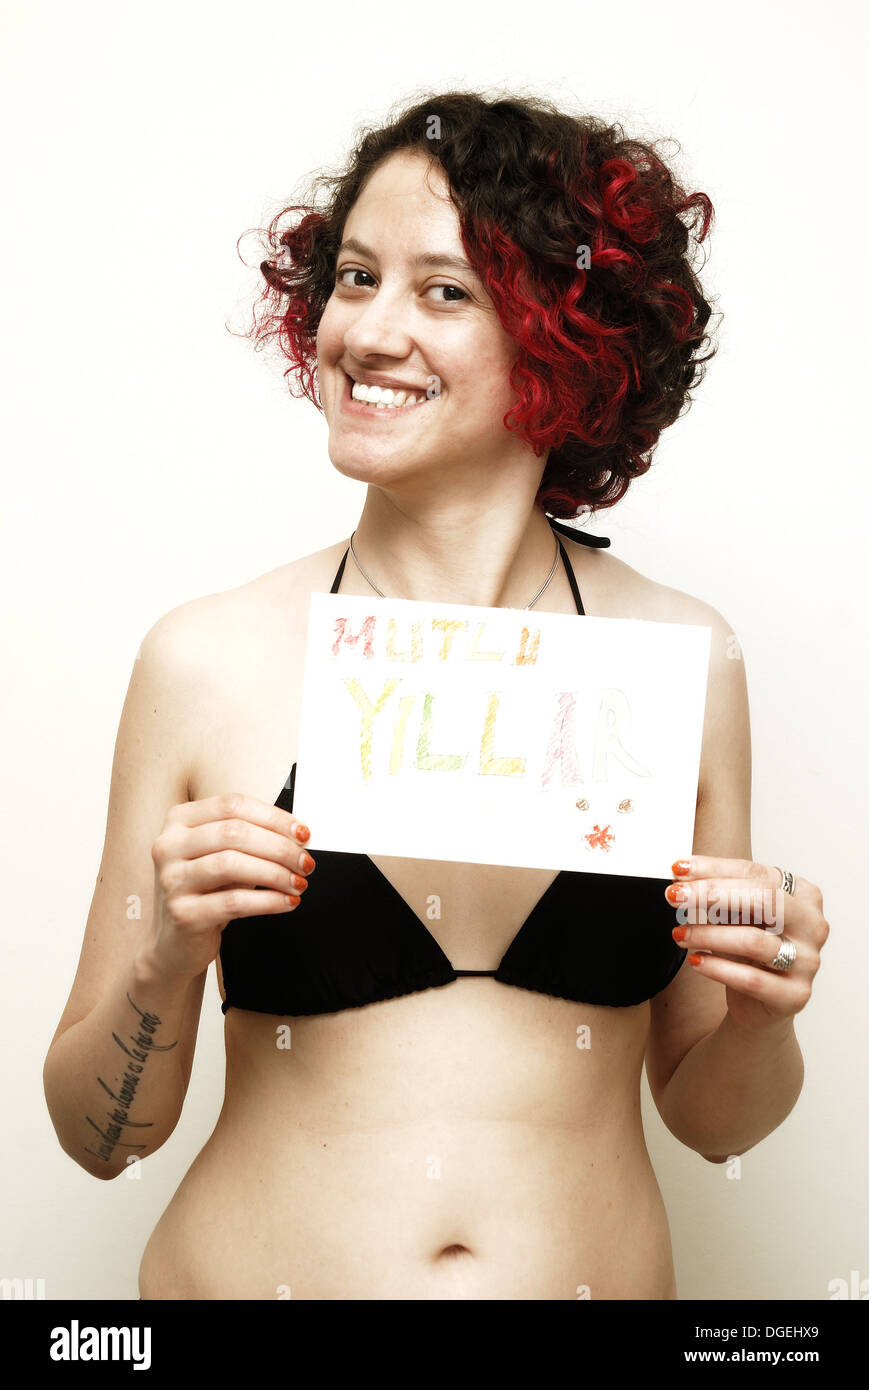 Young woman in bikini holding a 'Mutlu Yıllar' ('Happy New Year' in Turkish) card Stock Photo